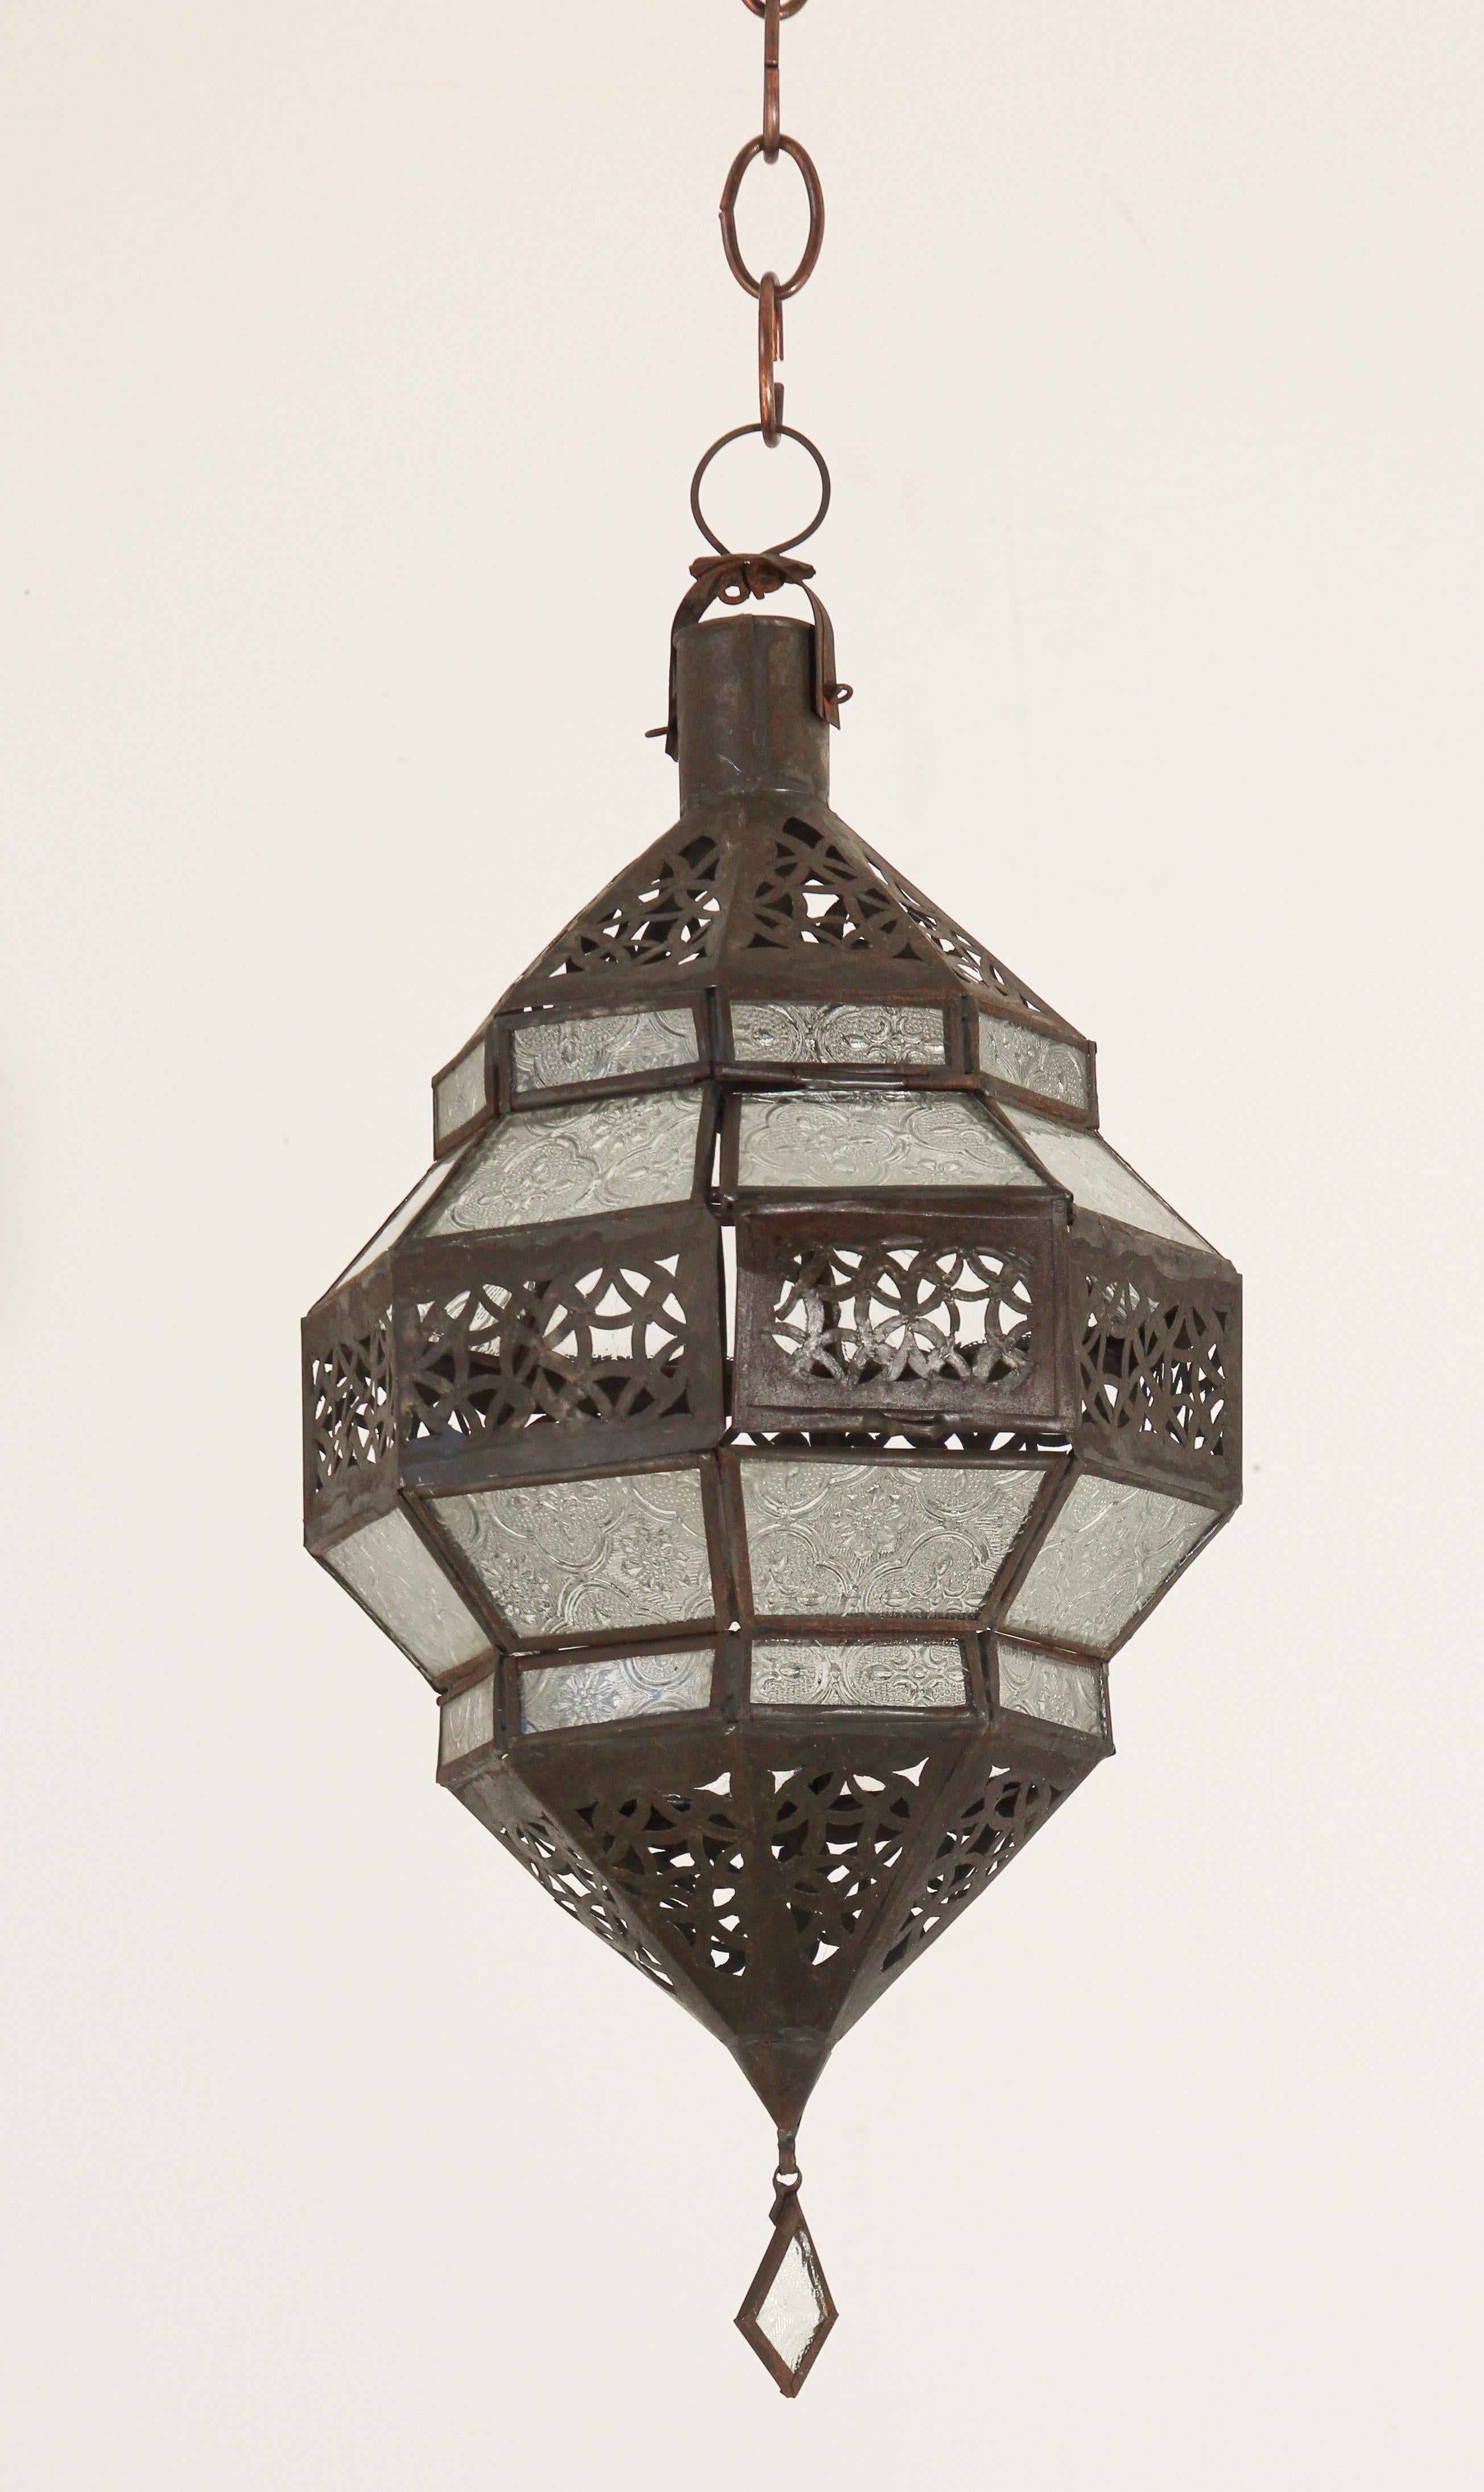 Laterne aus marokkanischem Metall und klarem Milchglas.
Marokkanische Laterne in achteckiger Form mit rostfarbener Metalloberfläche und klarem Glas.
Das obere und untere Metall ist handgeschnitten im durchbrochenen maurischen Design.
Wenn diese